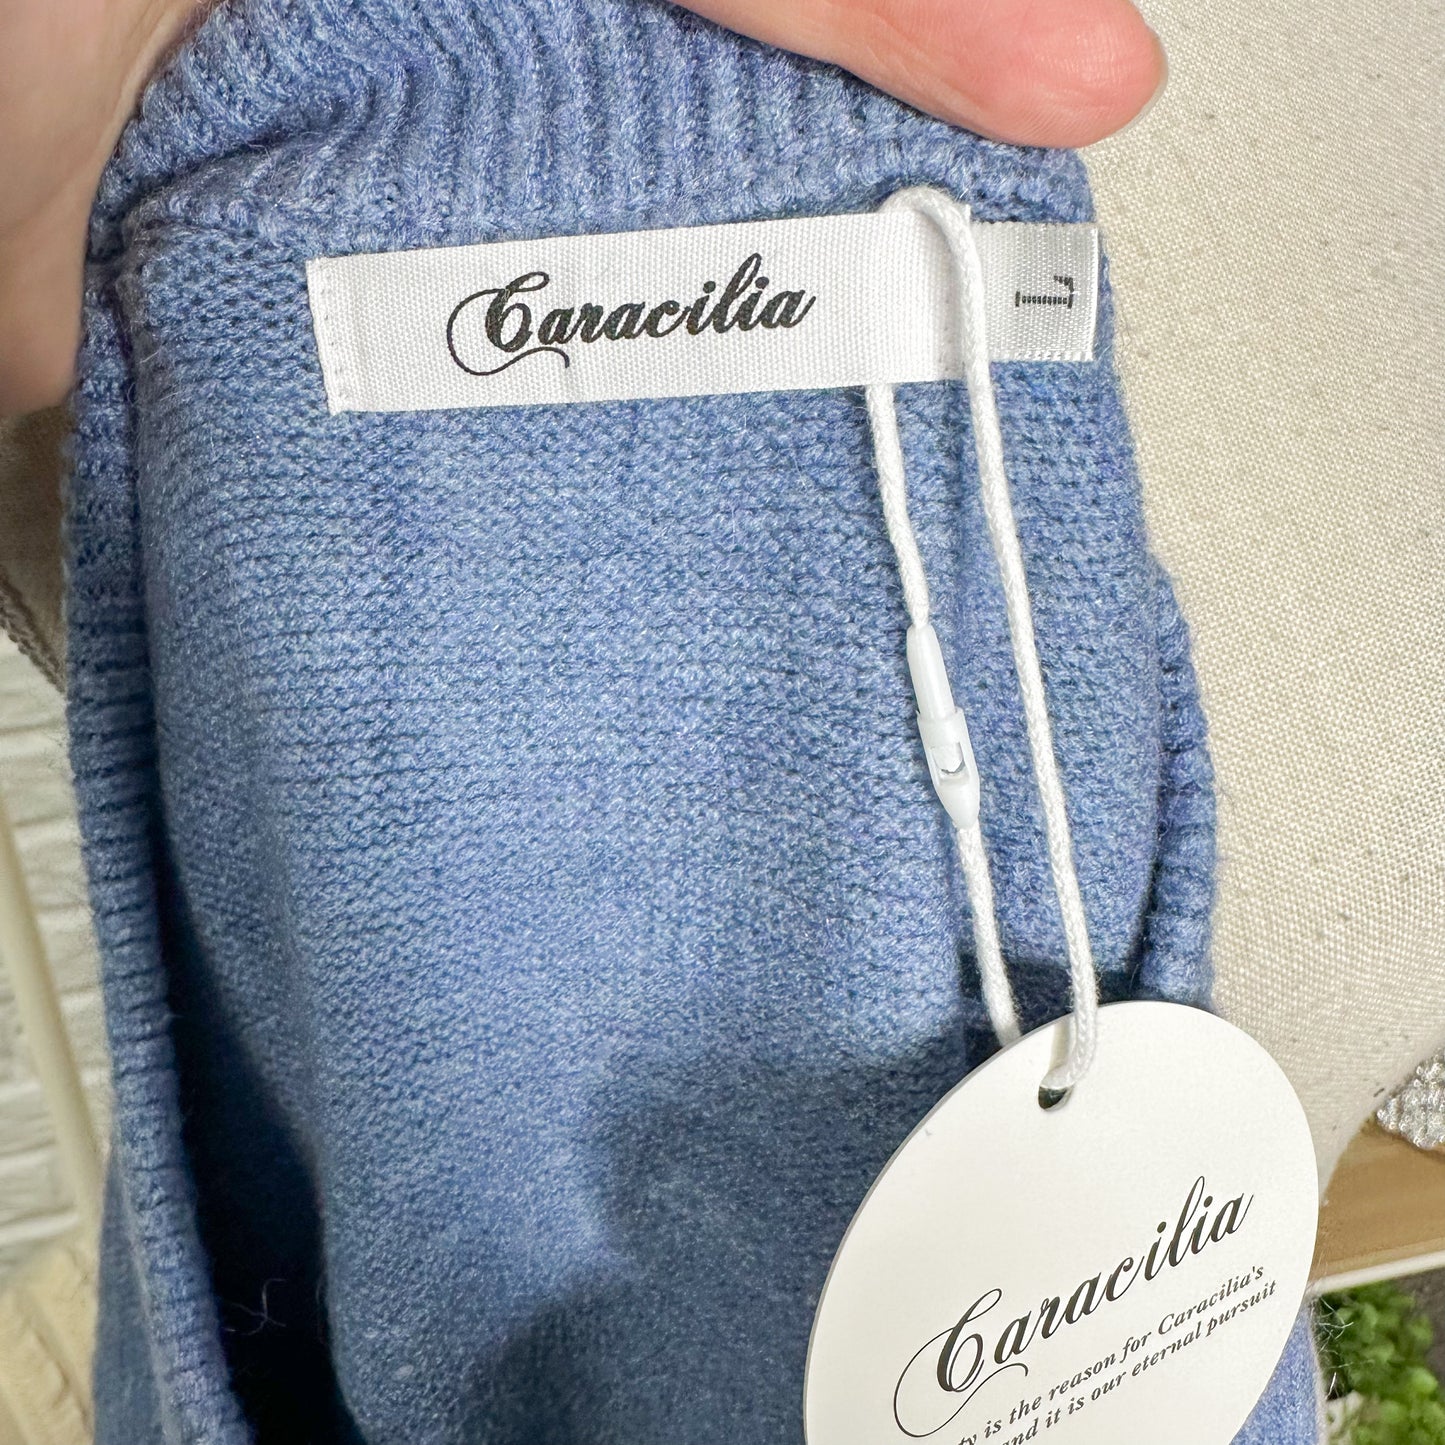 Caracilia New Blue Oversized Sweater Size Large